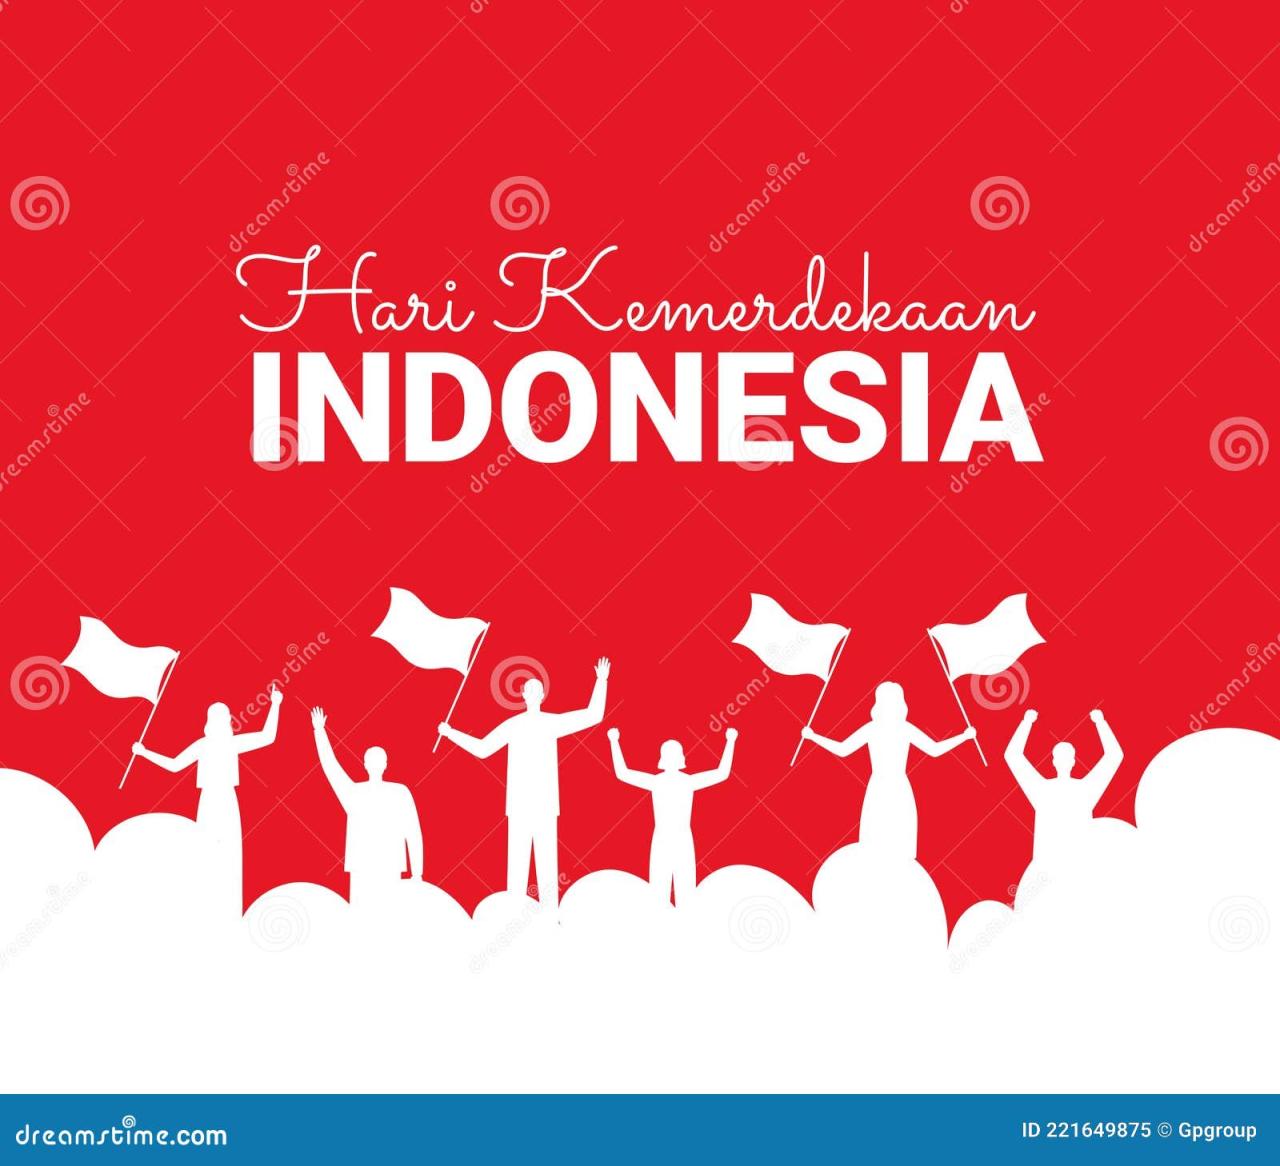 Poster perjuangan indonesia